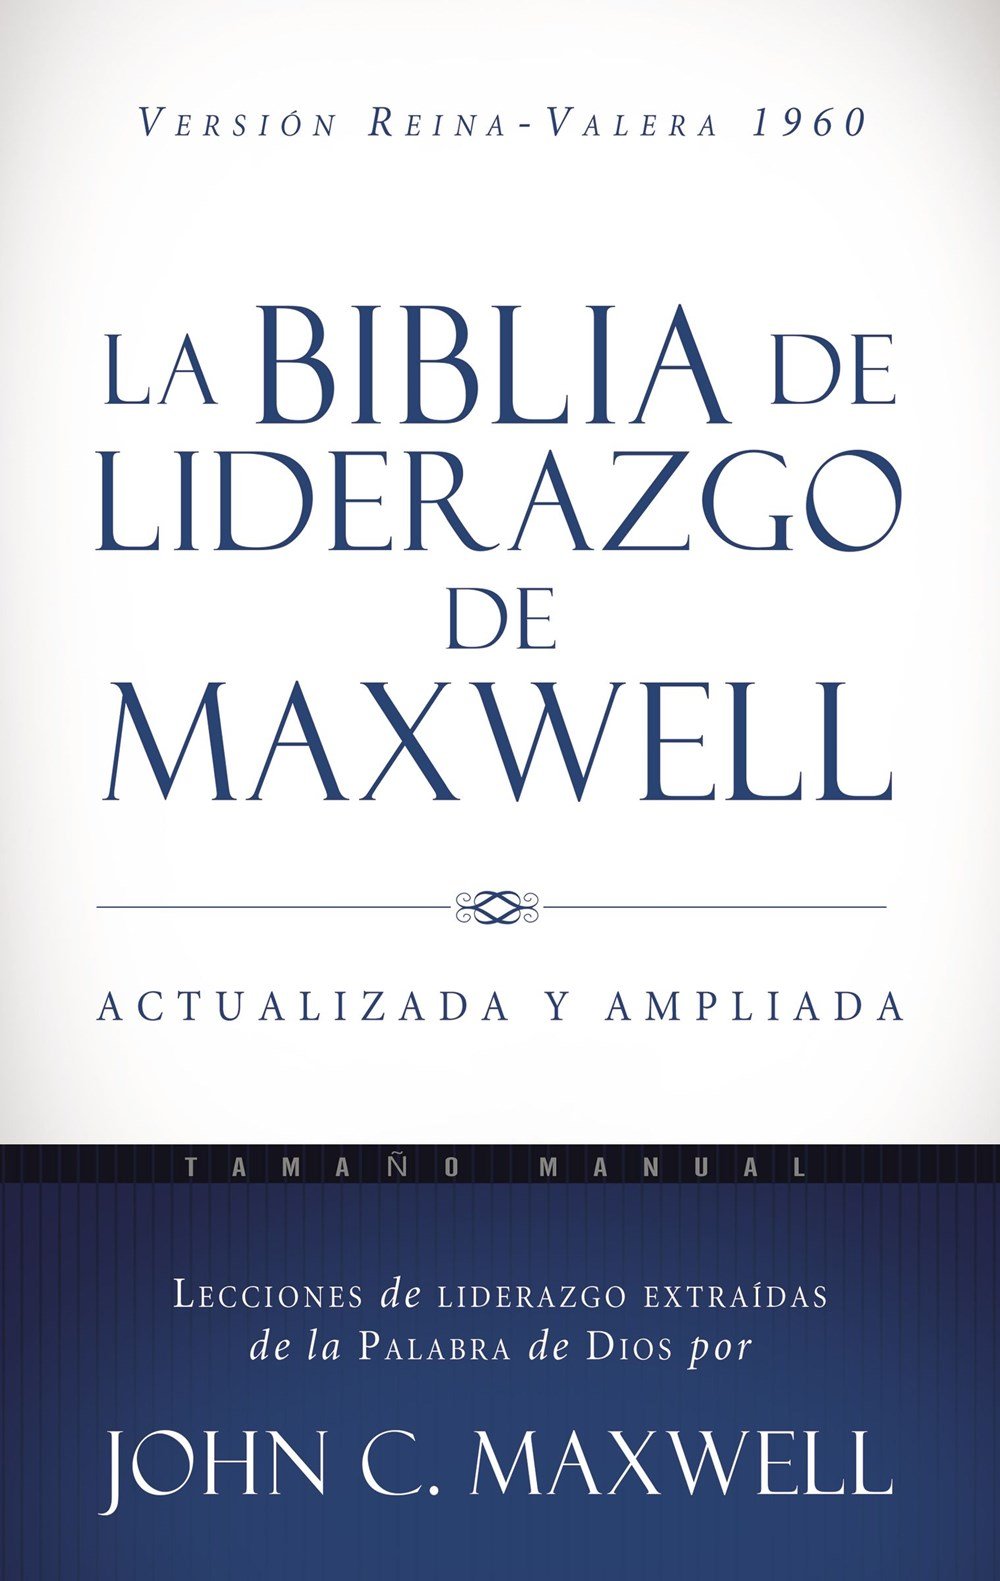 La Biblia de liderazgo de Maxwell RVR60 Tamaño manual de John Maxwell